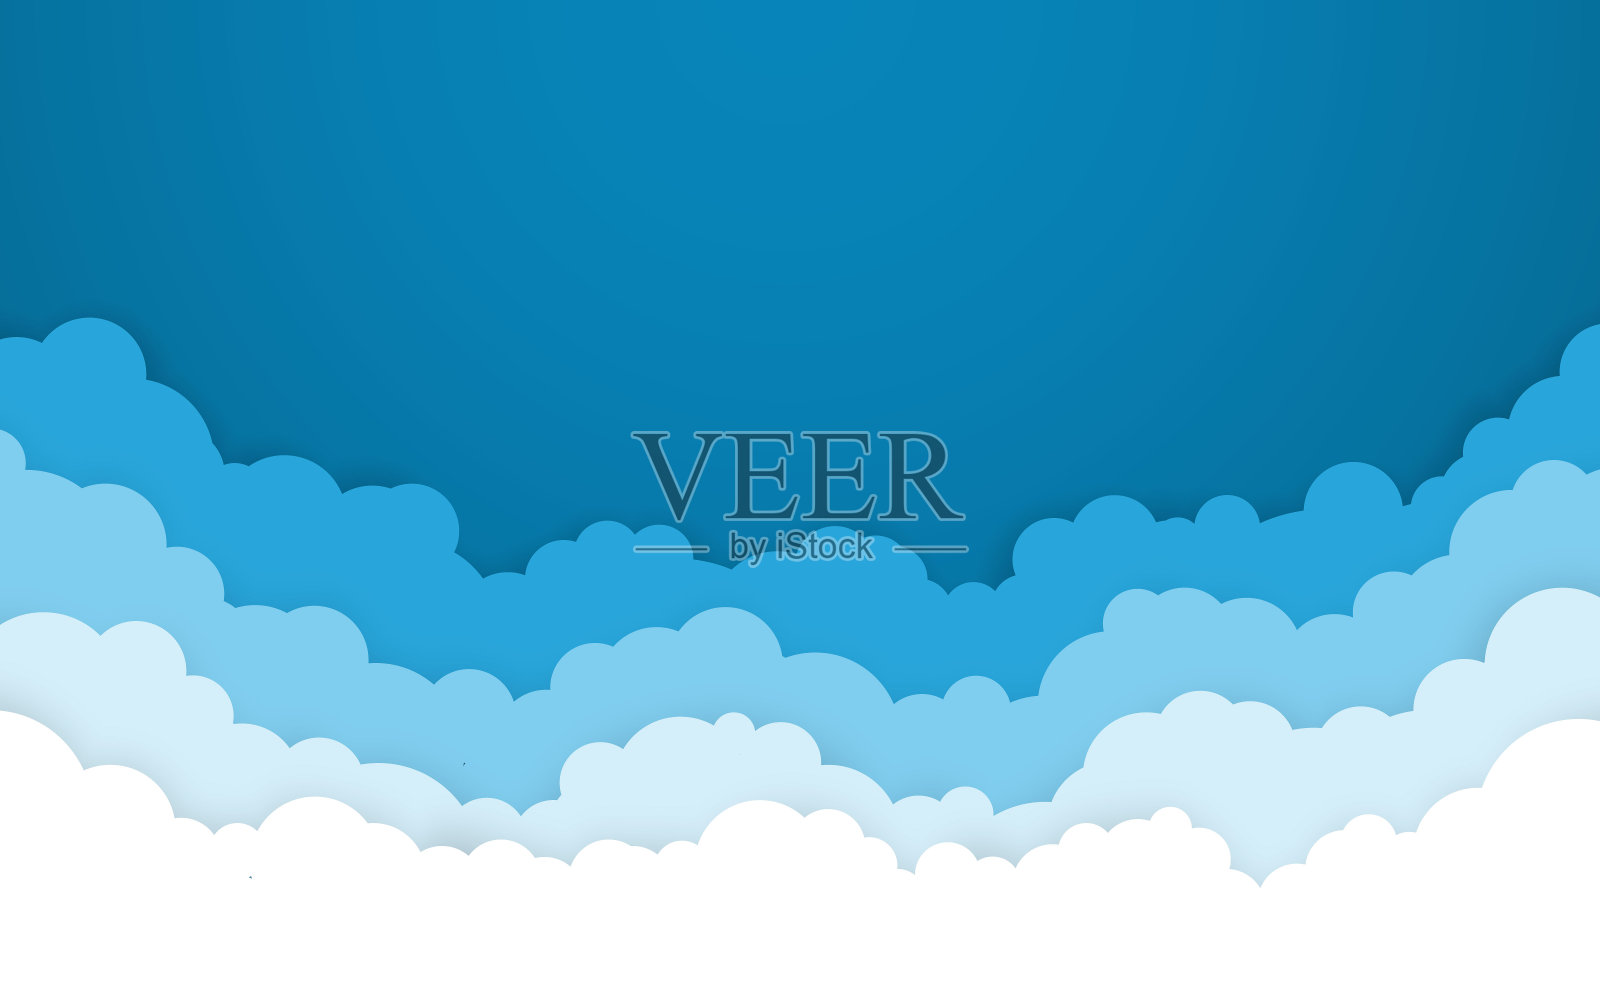 蓝天和白云的背景。卡通平面风格设计。矢量图插画图片素材